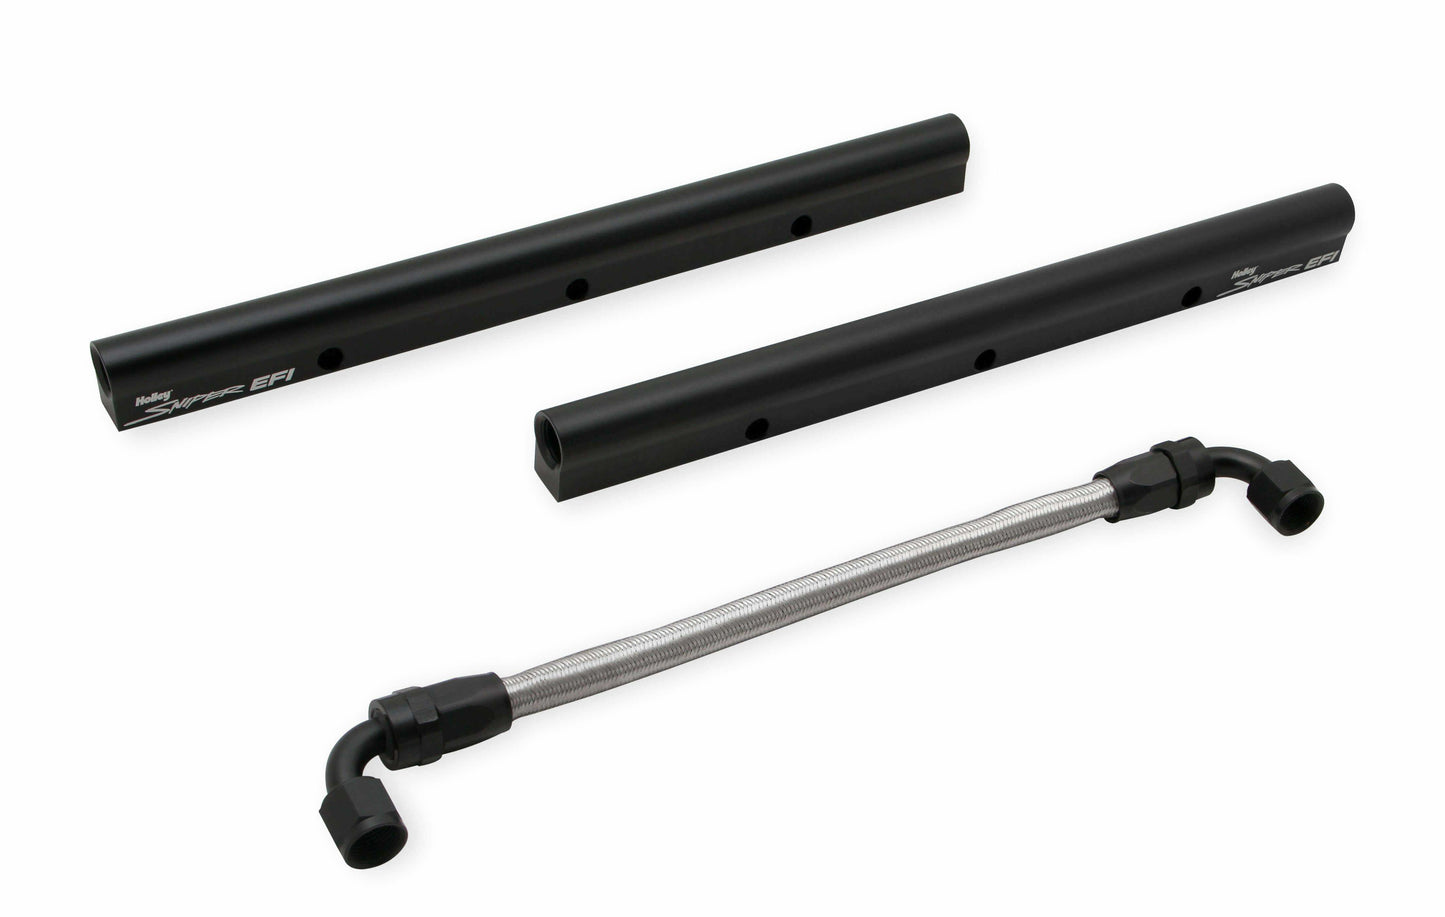 Sniper EFI Intake Manifold Dual Plenum 102mm and Fuel Rail Kit - Black - 822242